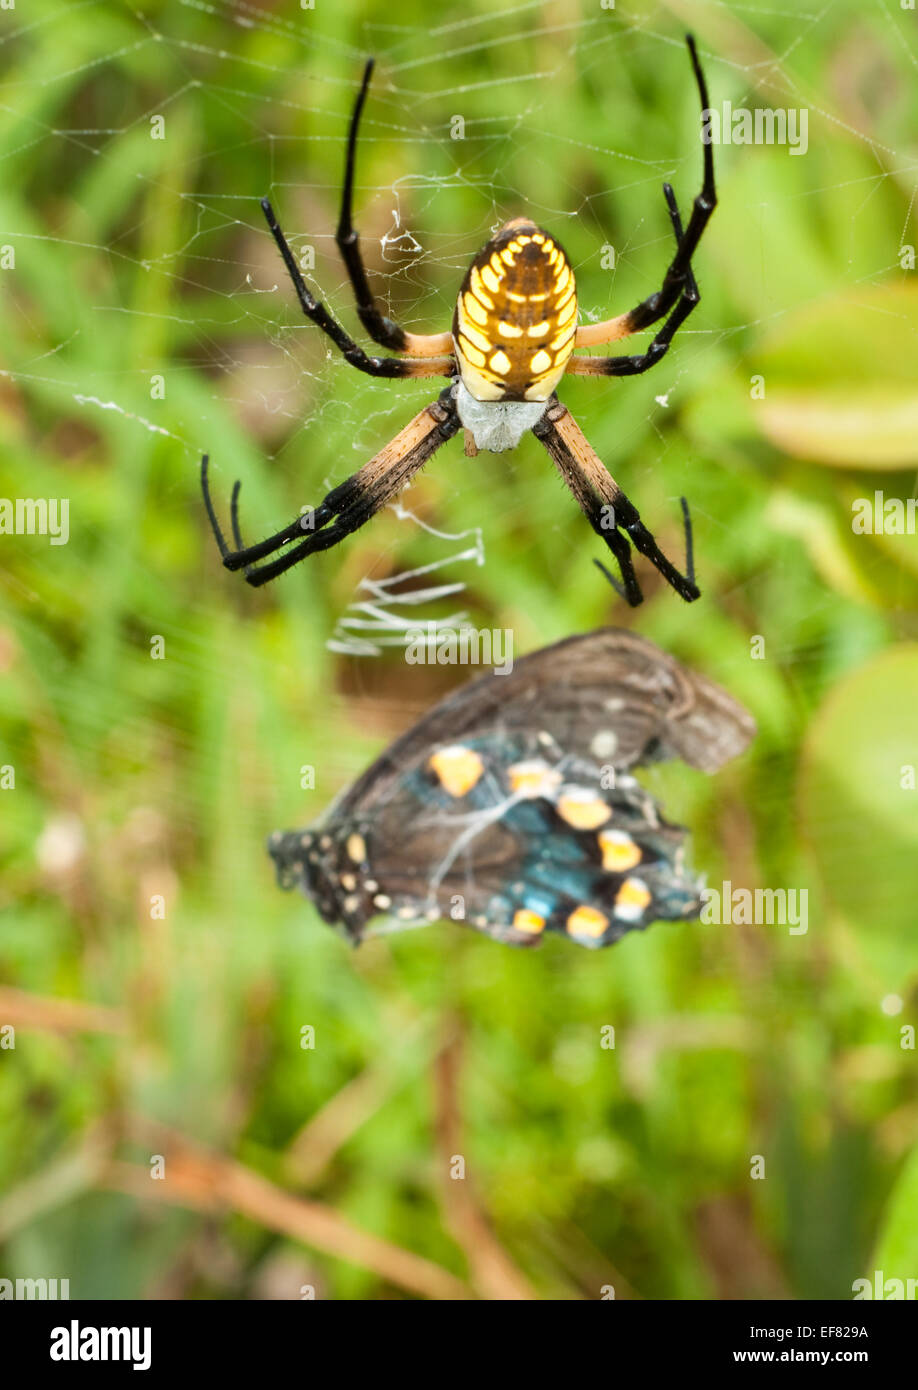 Hembra negro y amarillo araña Argiope custodiando su apretadamente envuelto especie presa de mariposa Foto de stock